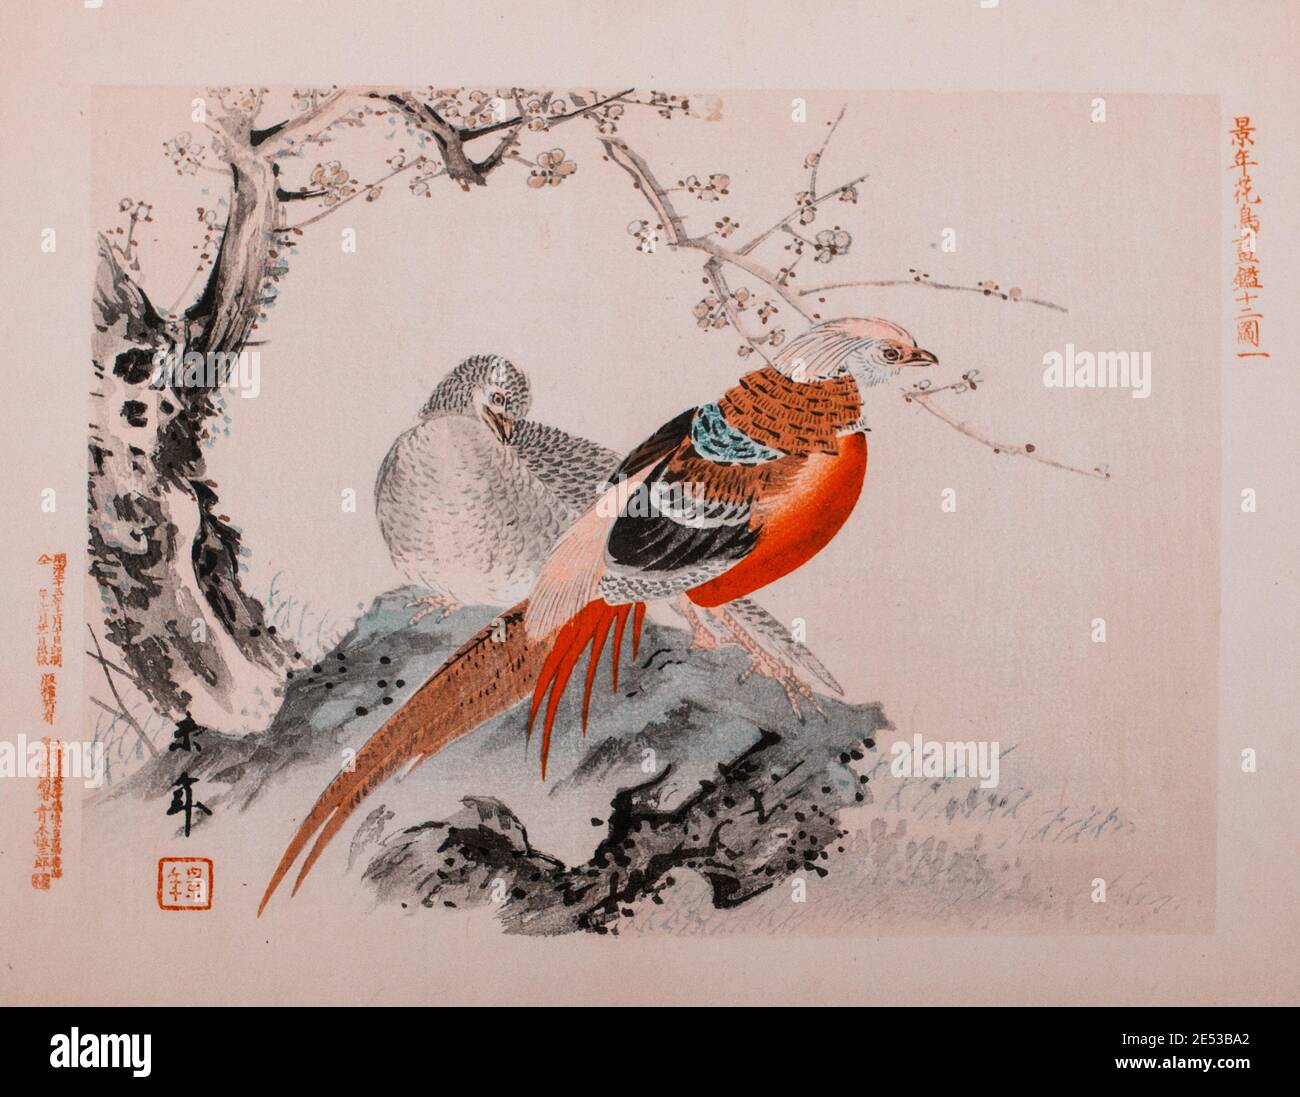 Imao keinen: Keinen Kacho Gafu (albums d'oiseaux et de fleurs four Seasons), faisans chinois. Japon. 1892 Imao keinen (1845 – 1924) est un peintre japonais Banque D'Images